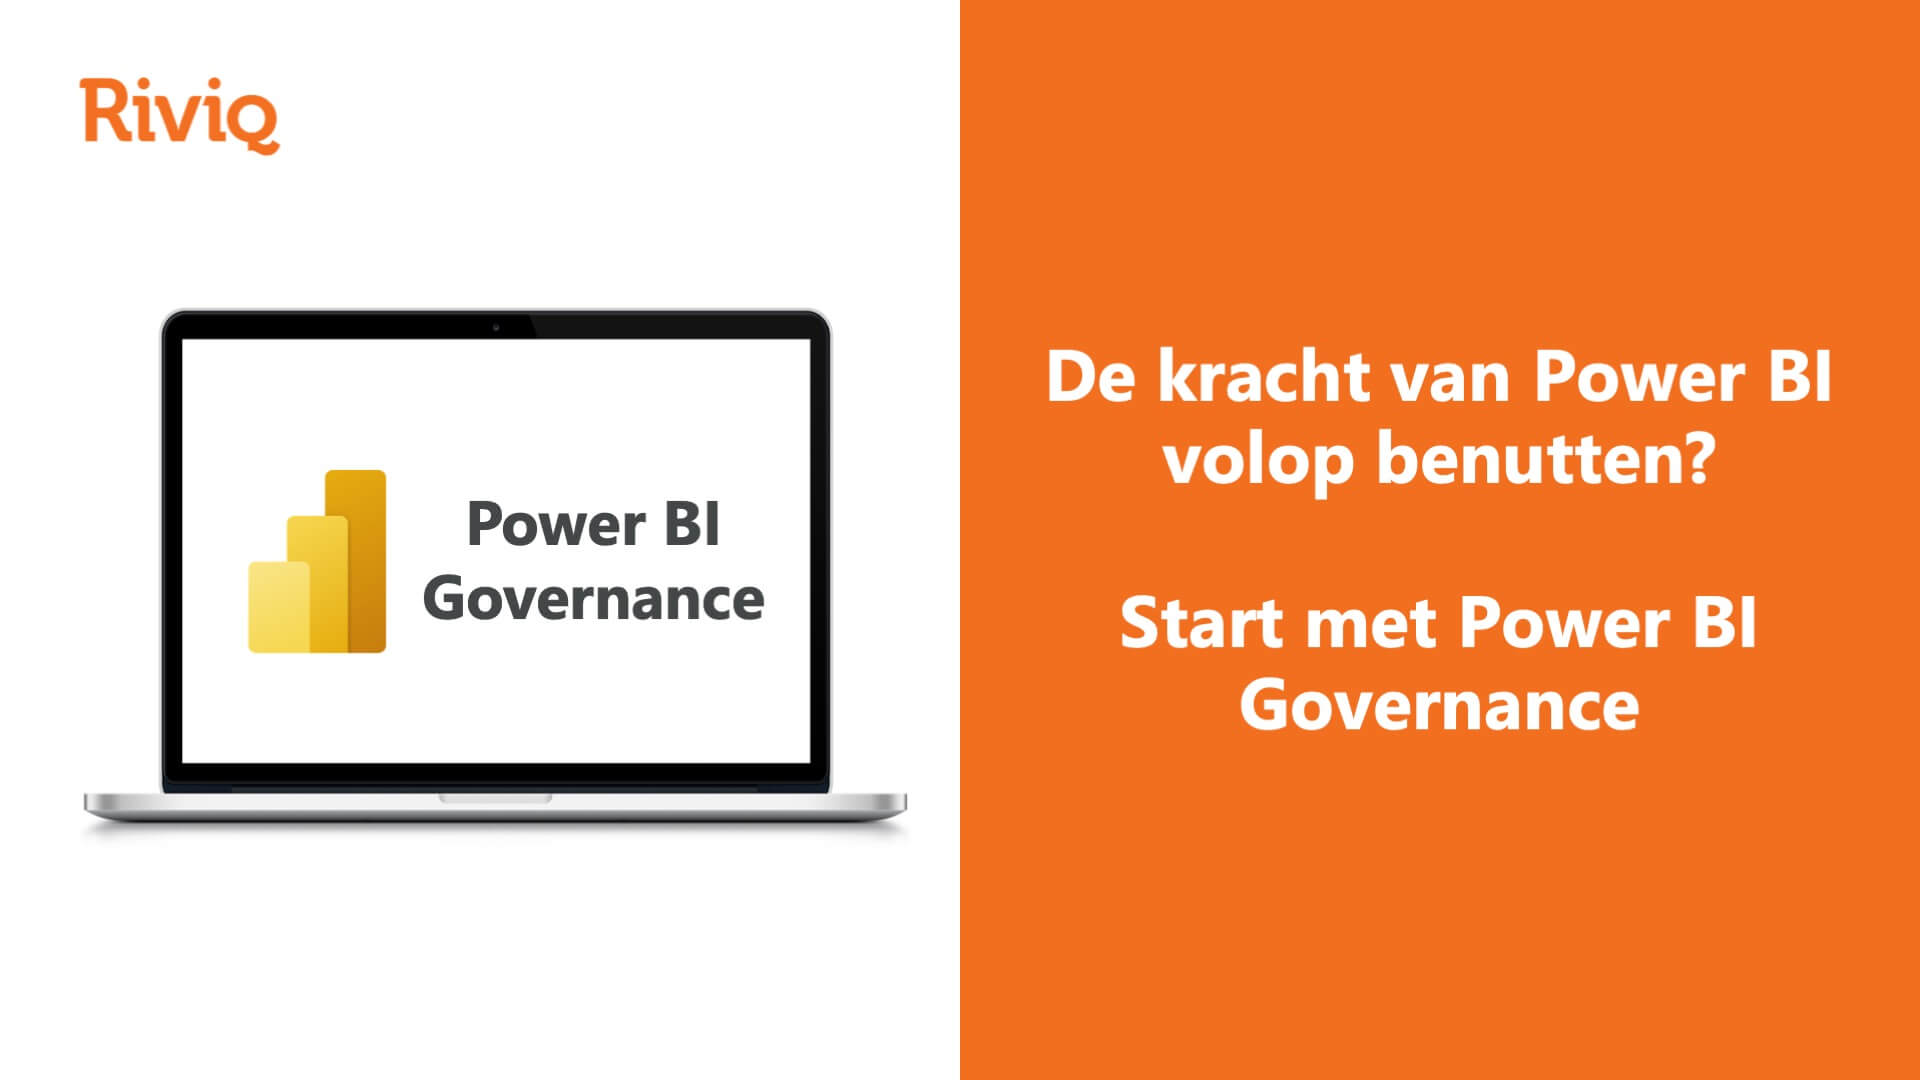 Power BI Governance